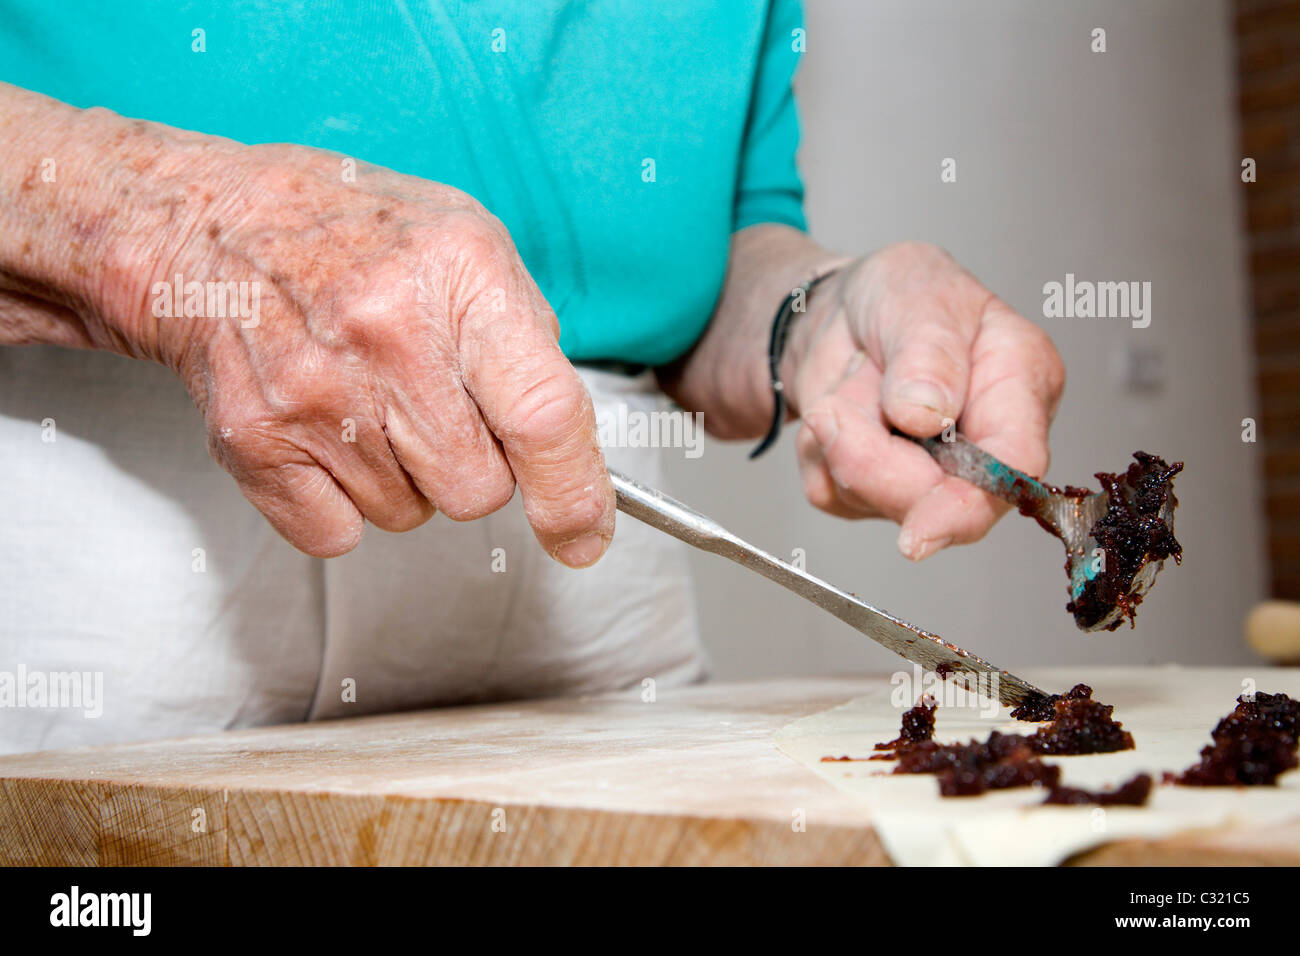 Mains de grand-mère par la cuisson Banque D'Images